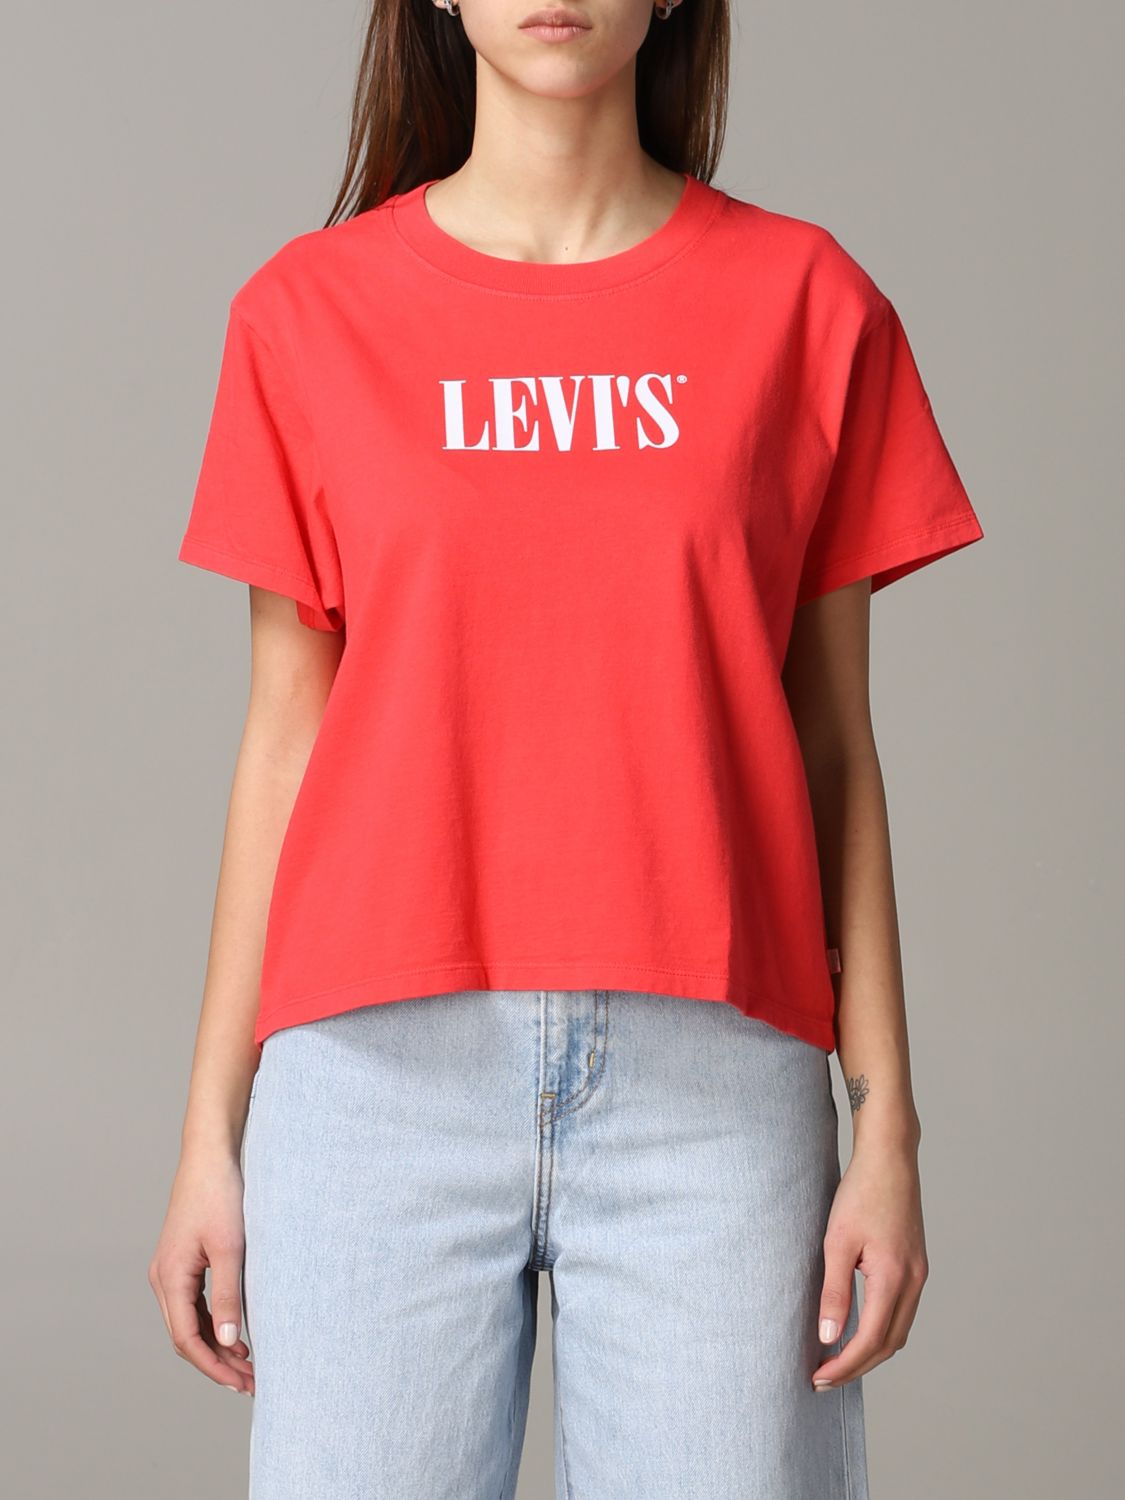 levis red t shirt women